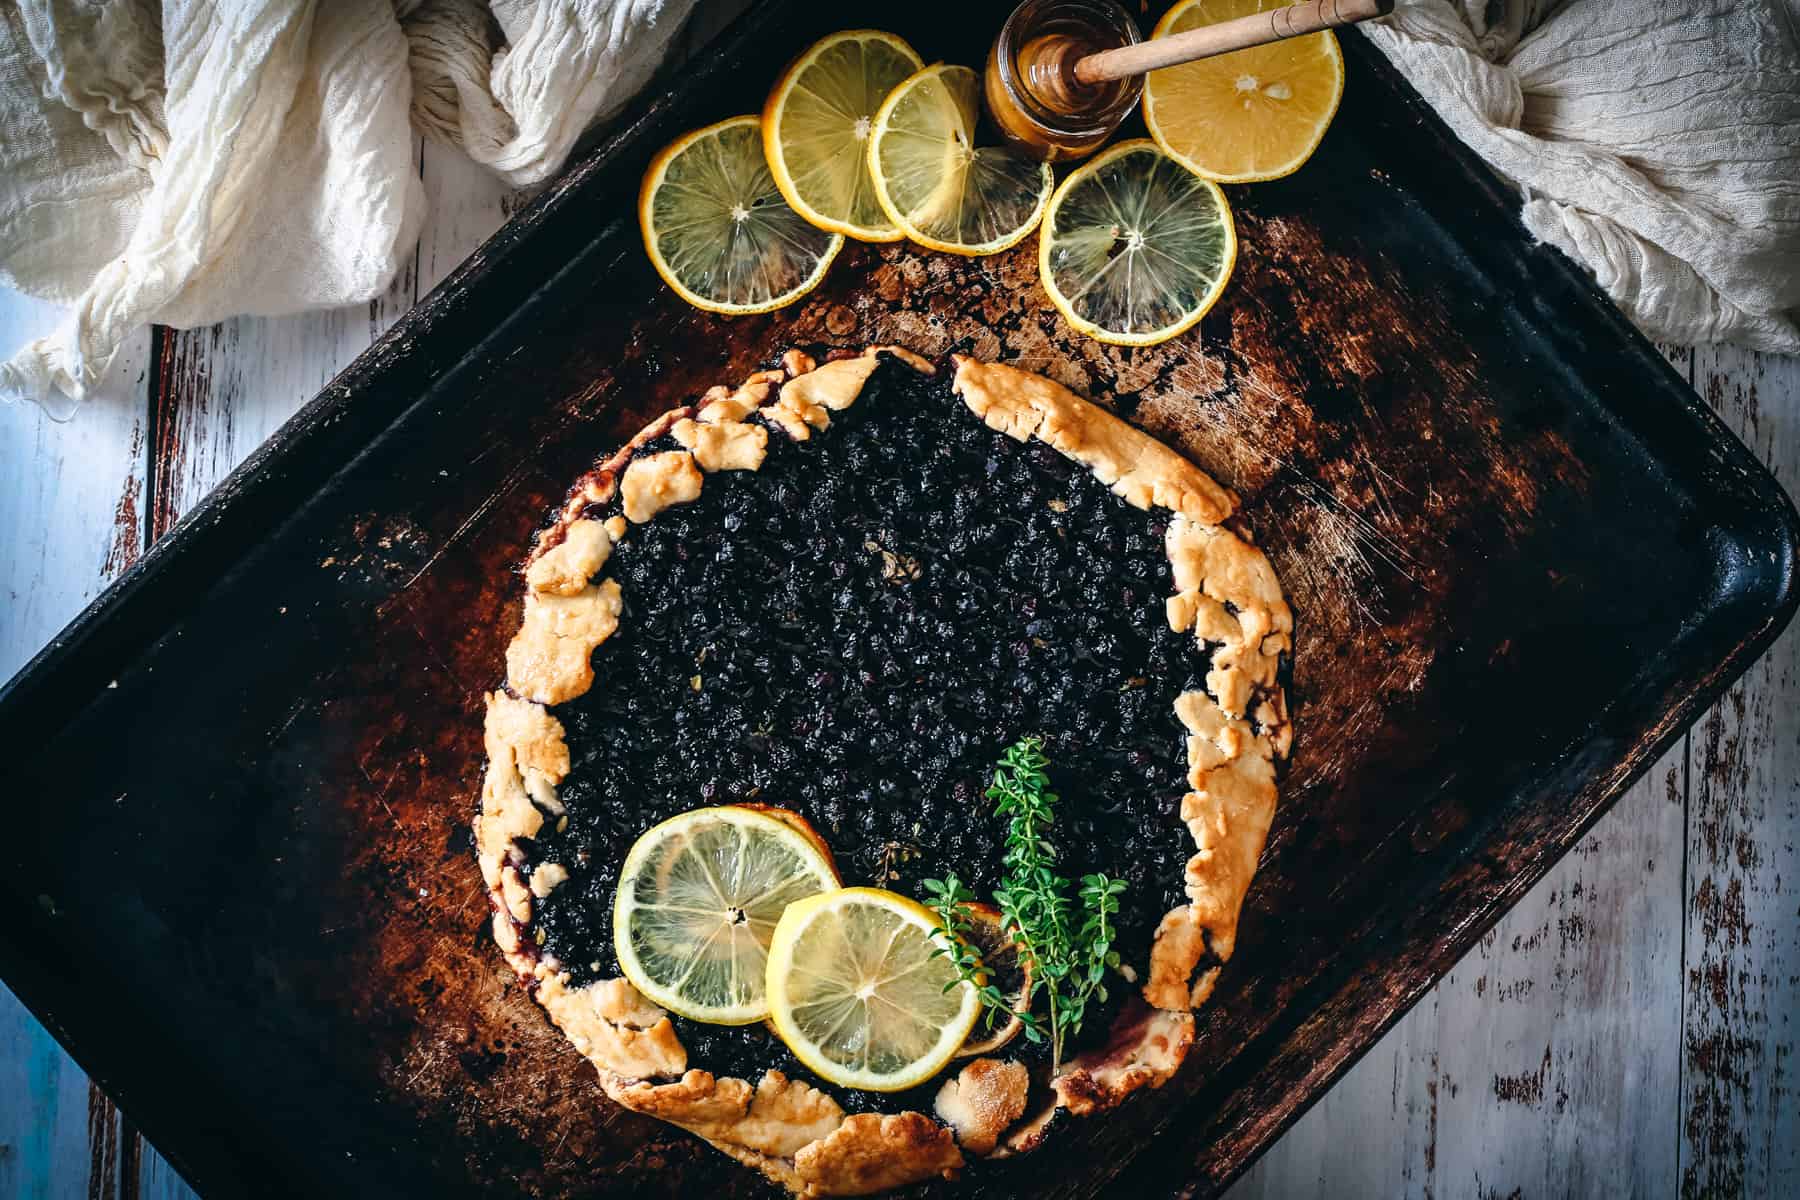 blueberry lemon galette on baking sheet with lemon slices and honey